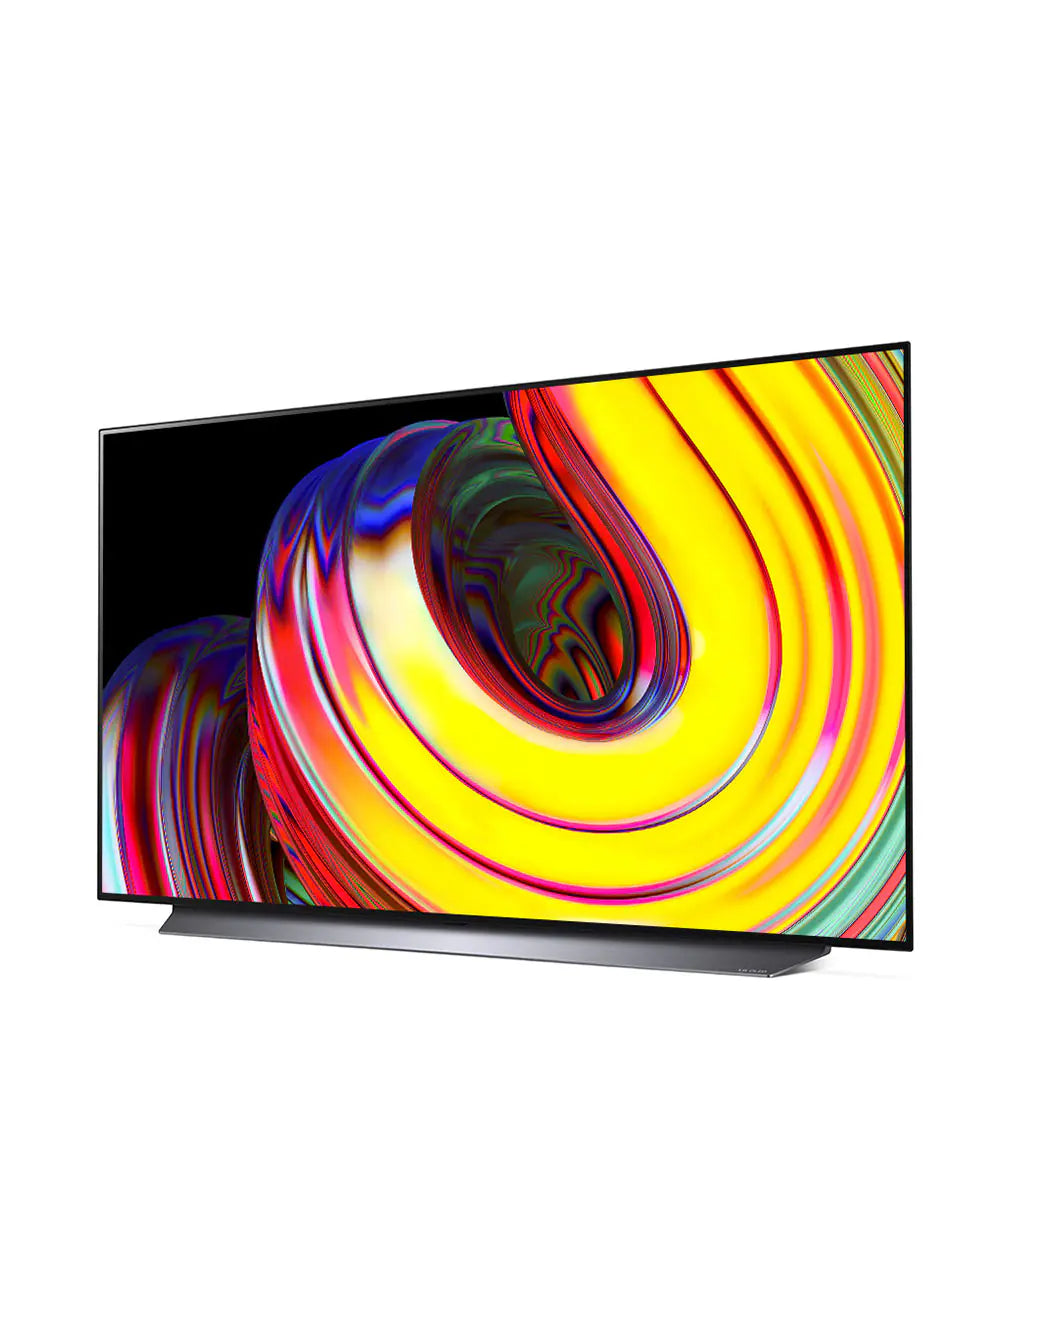 LG CS 55 inch 4K OLED TV with Self-Lit OLED Pixels